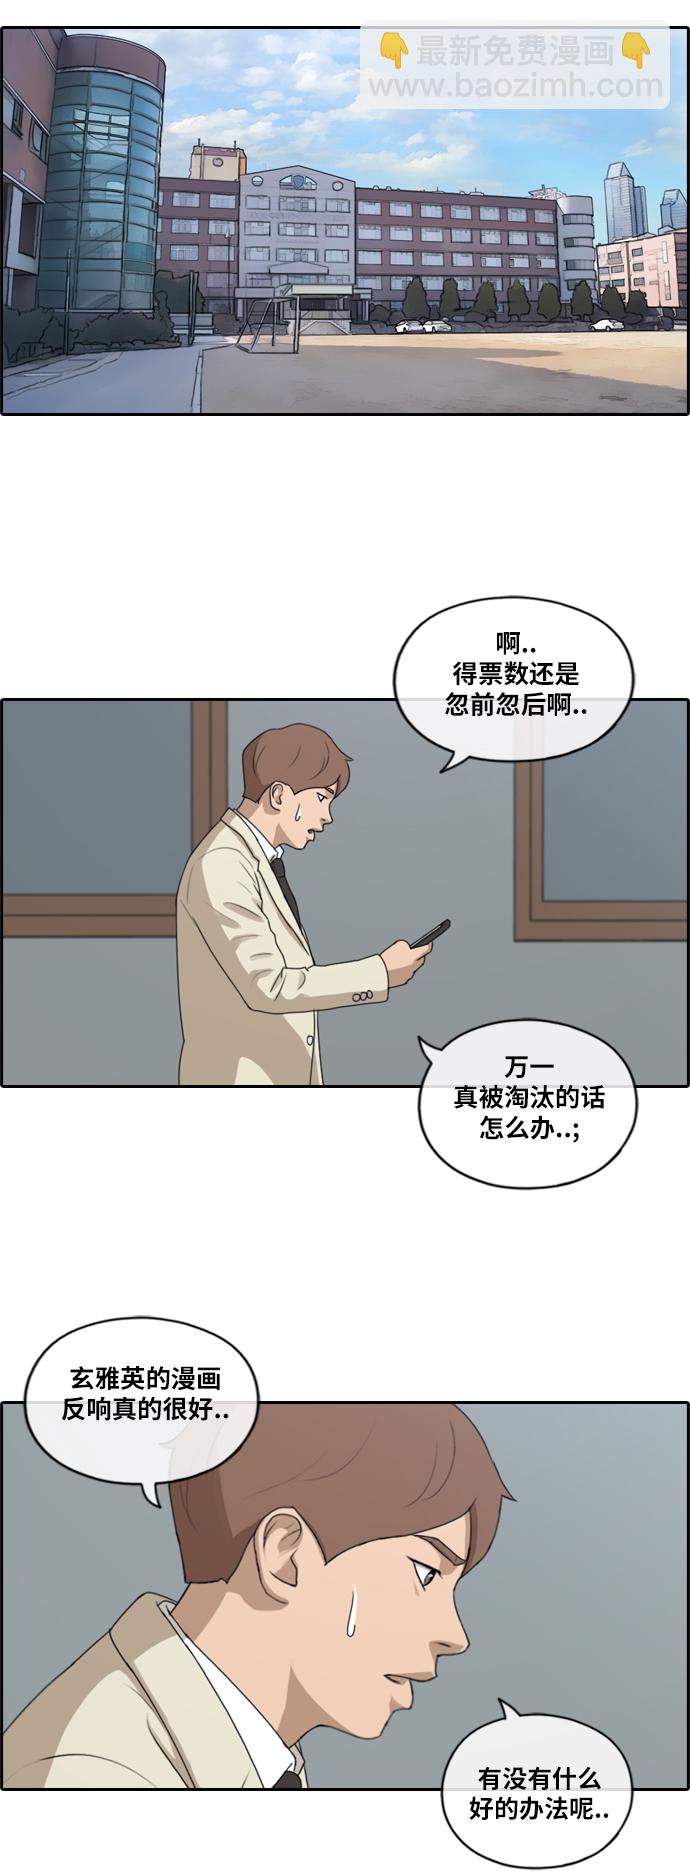 青春白卷 - [第174话] 高校漫画16强 - 6